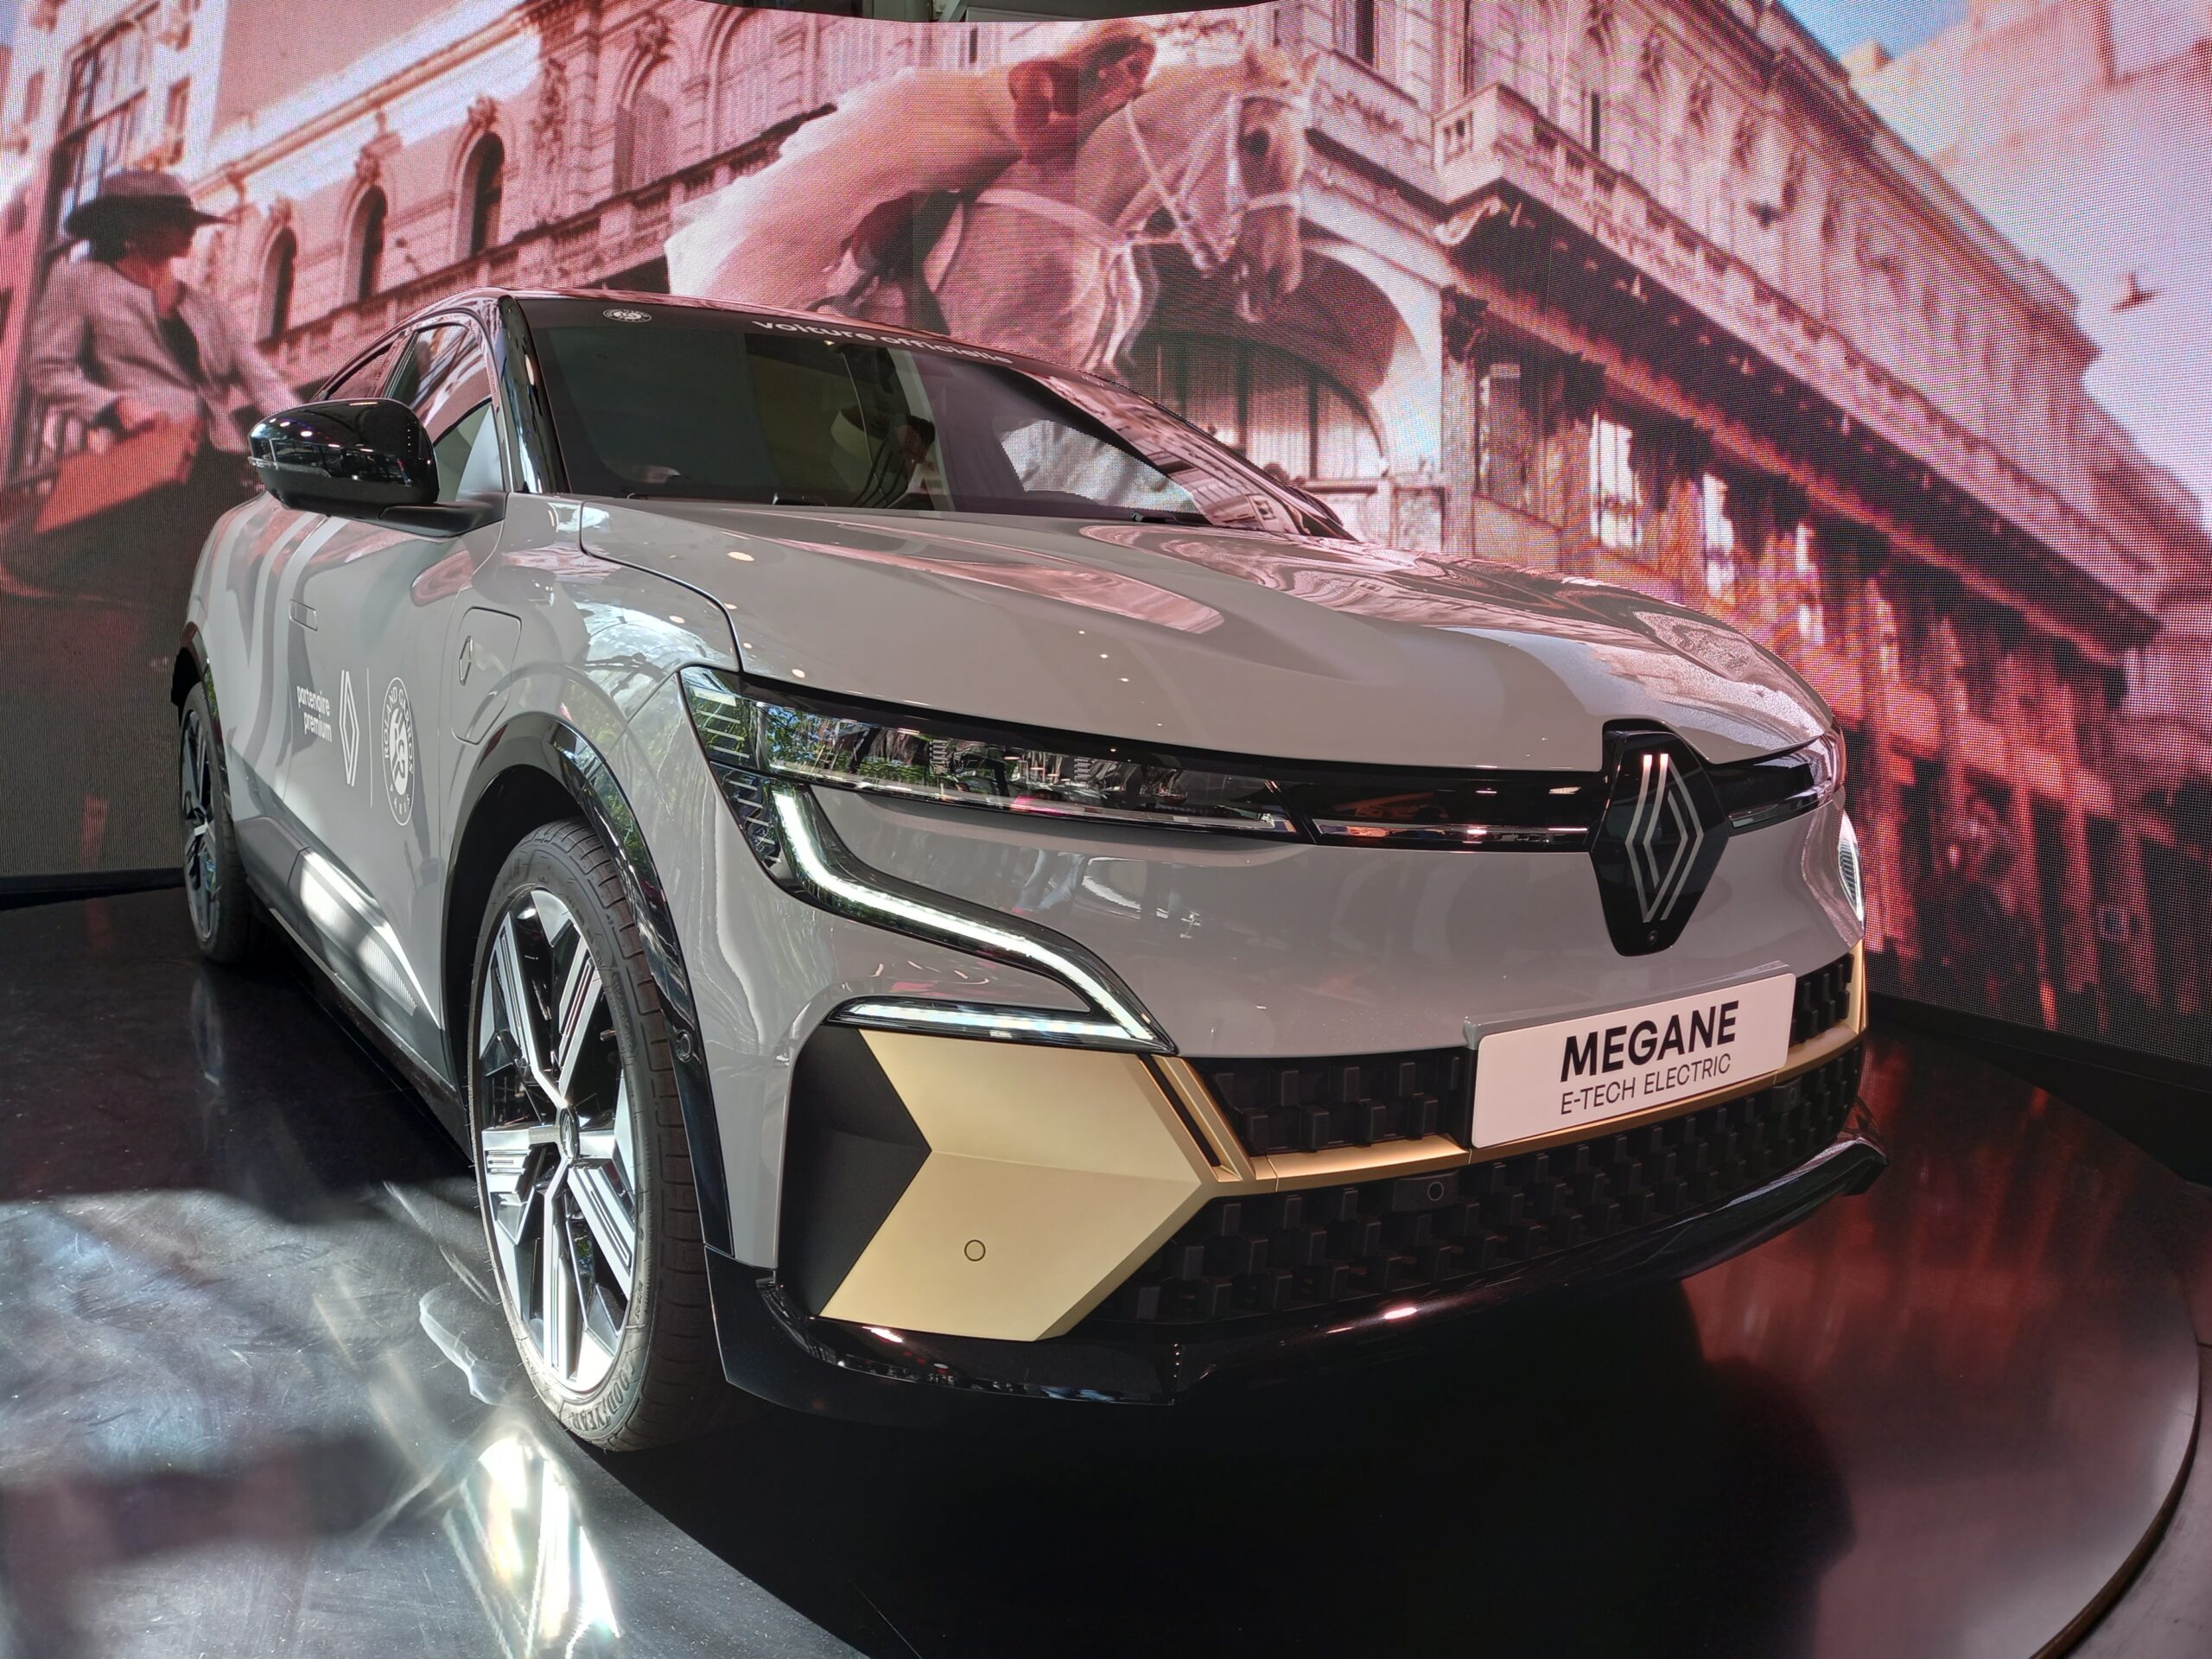 Essai en avant première de la nouvelle Renault Megane E-tech :